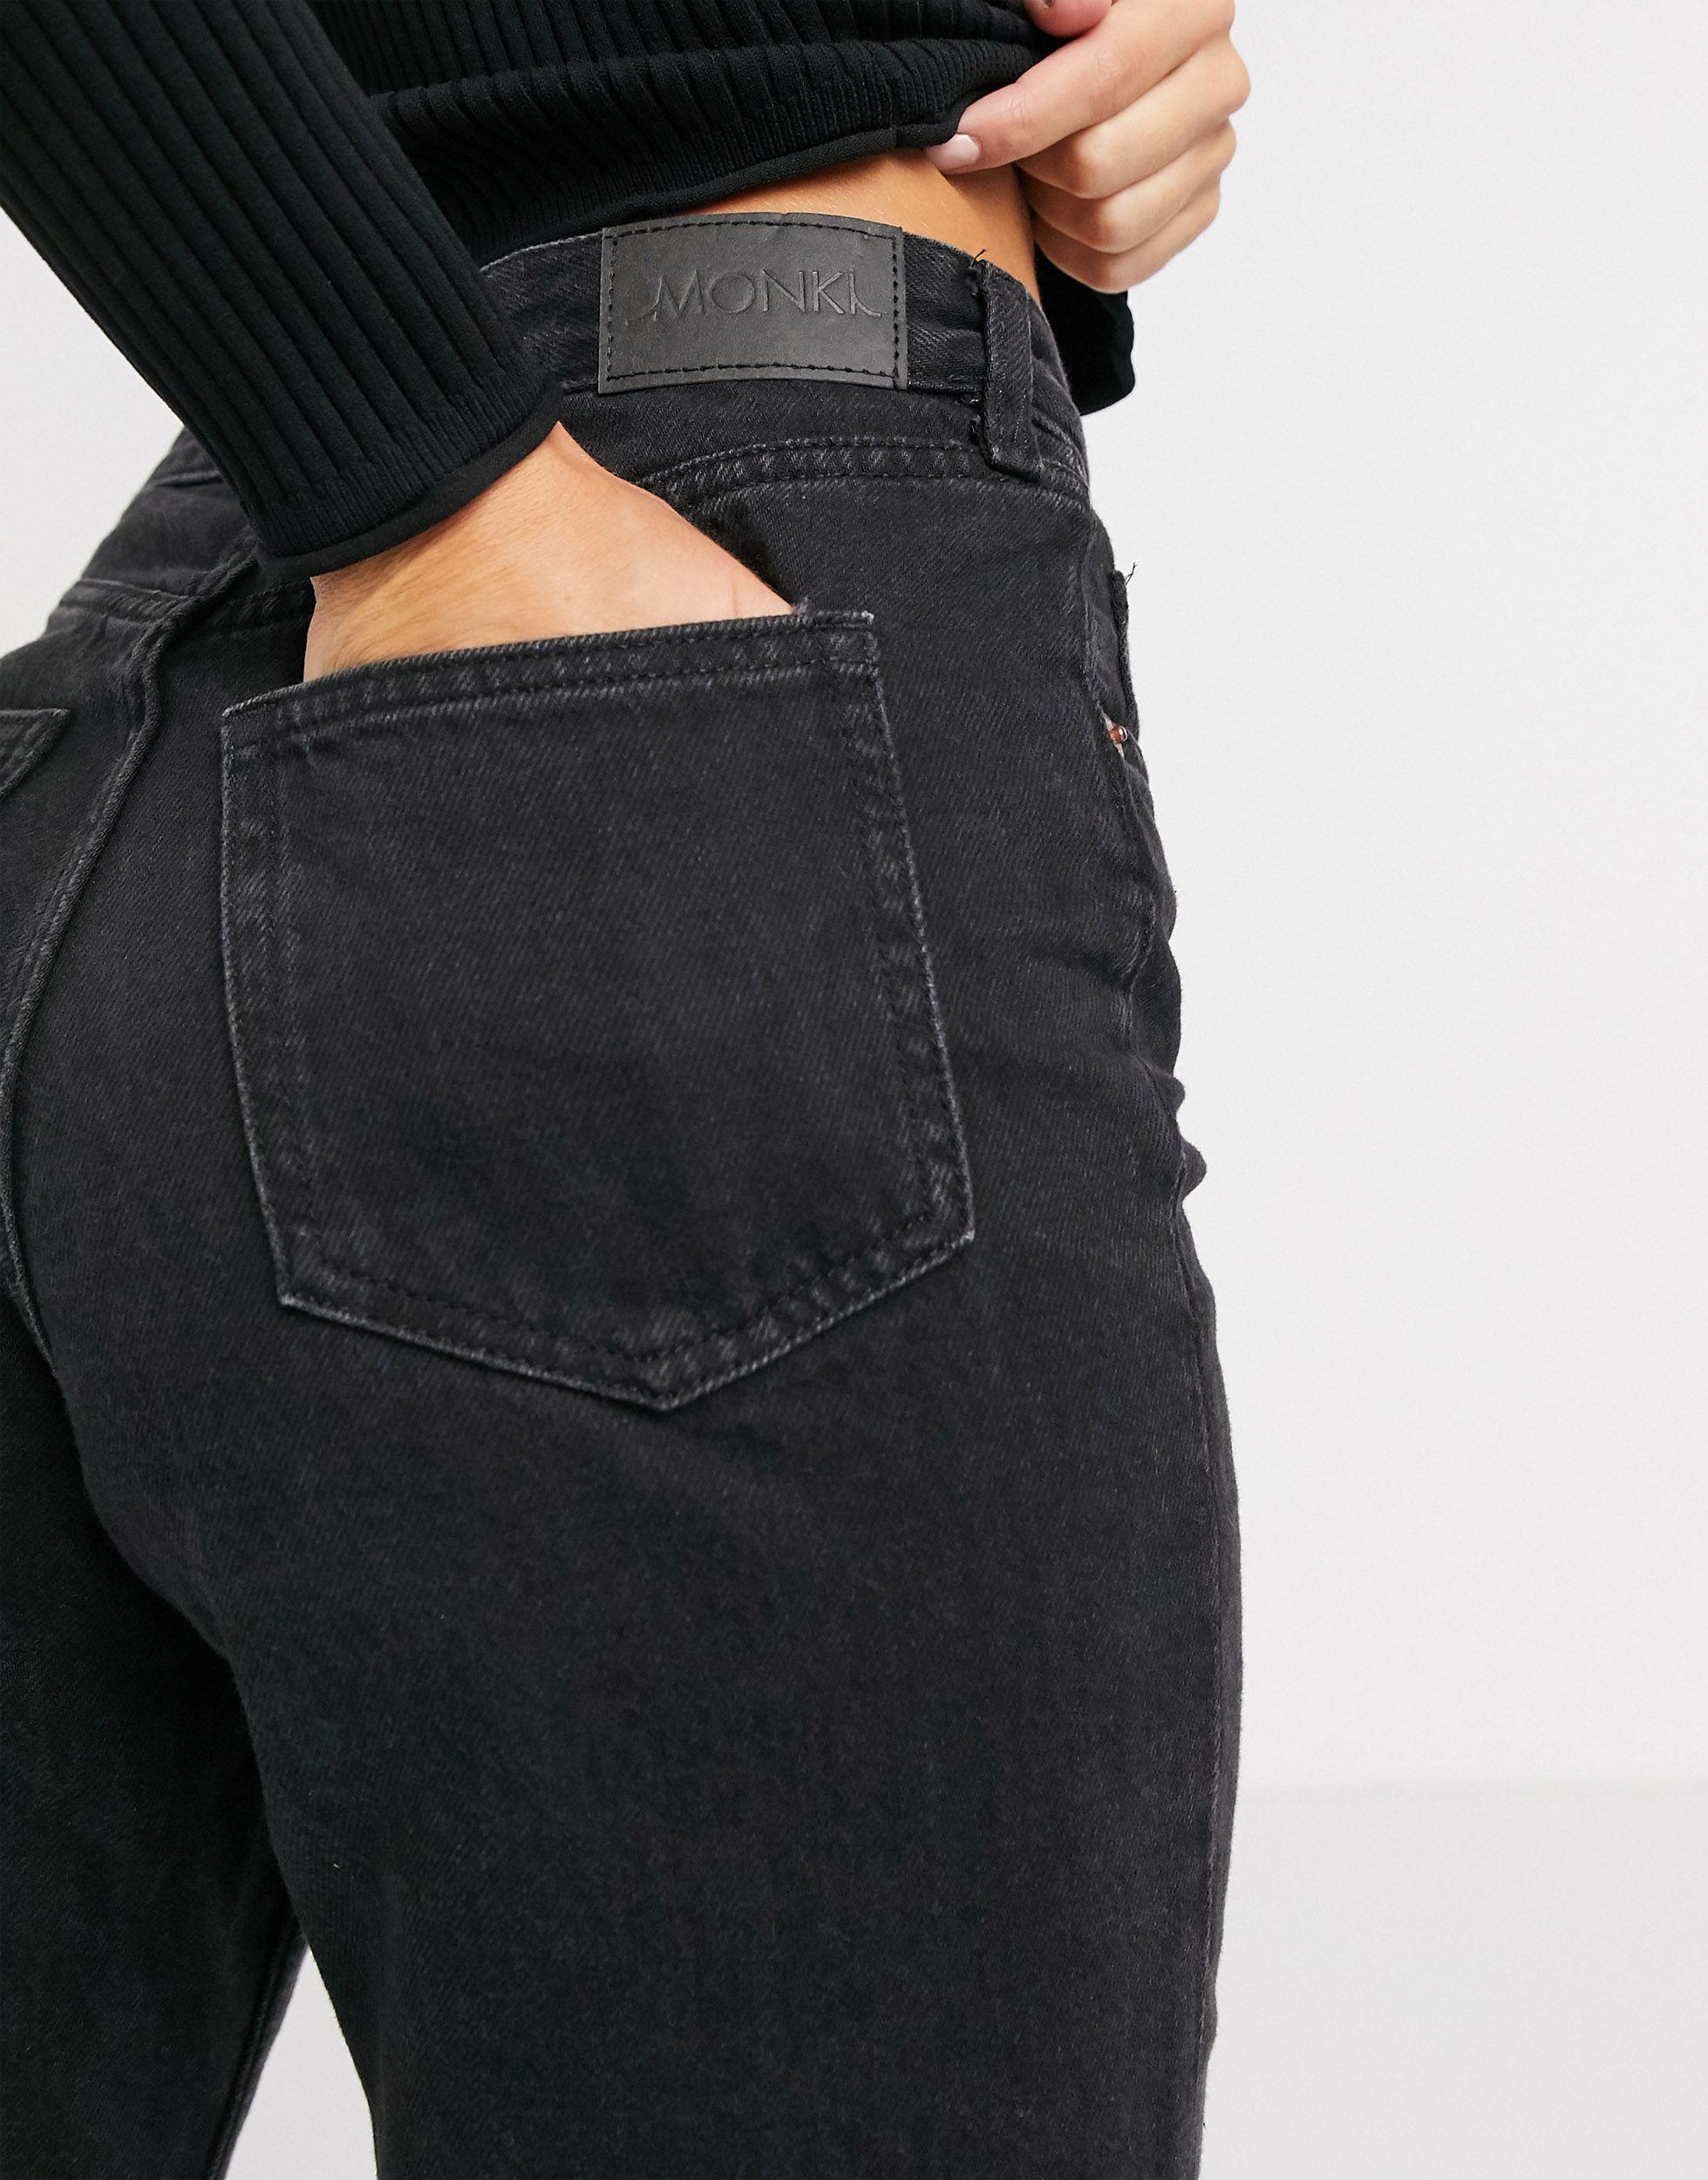 Monki Taiki Organic Cotton High Waist Straight Leg Jean in Black - Lyst